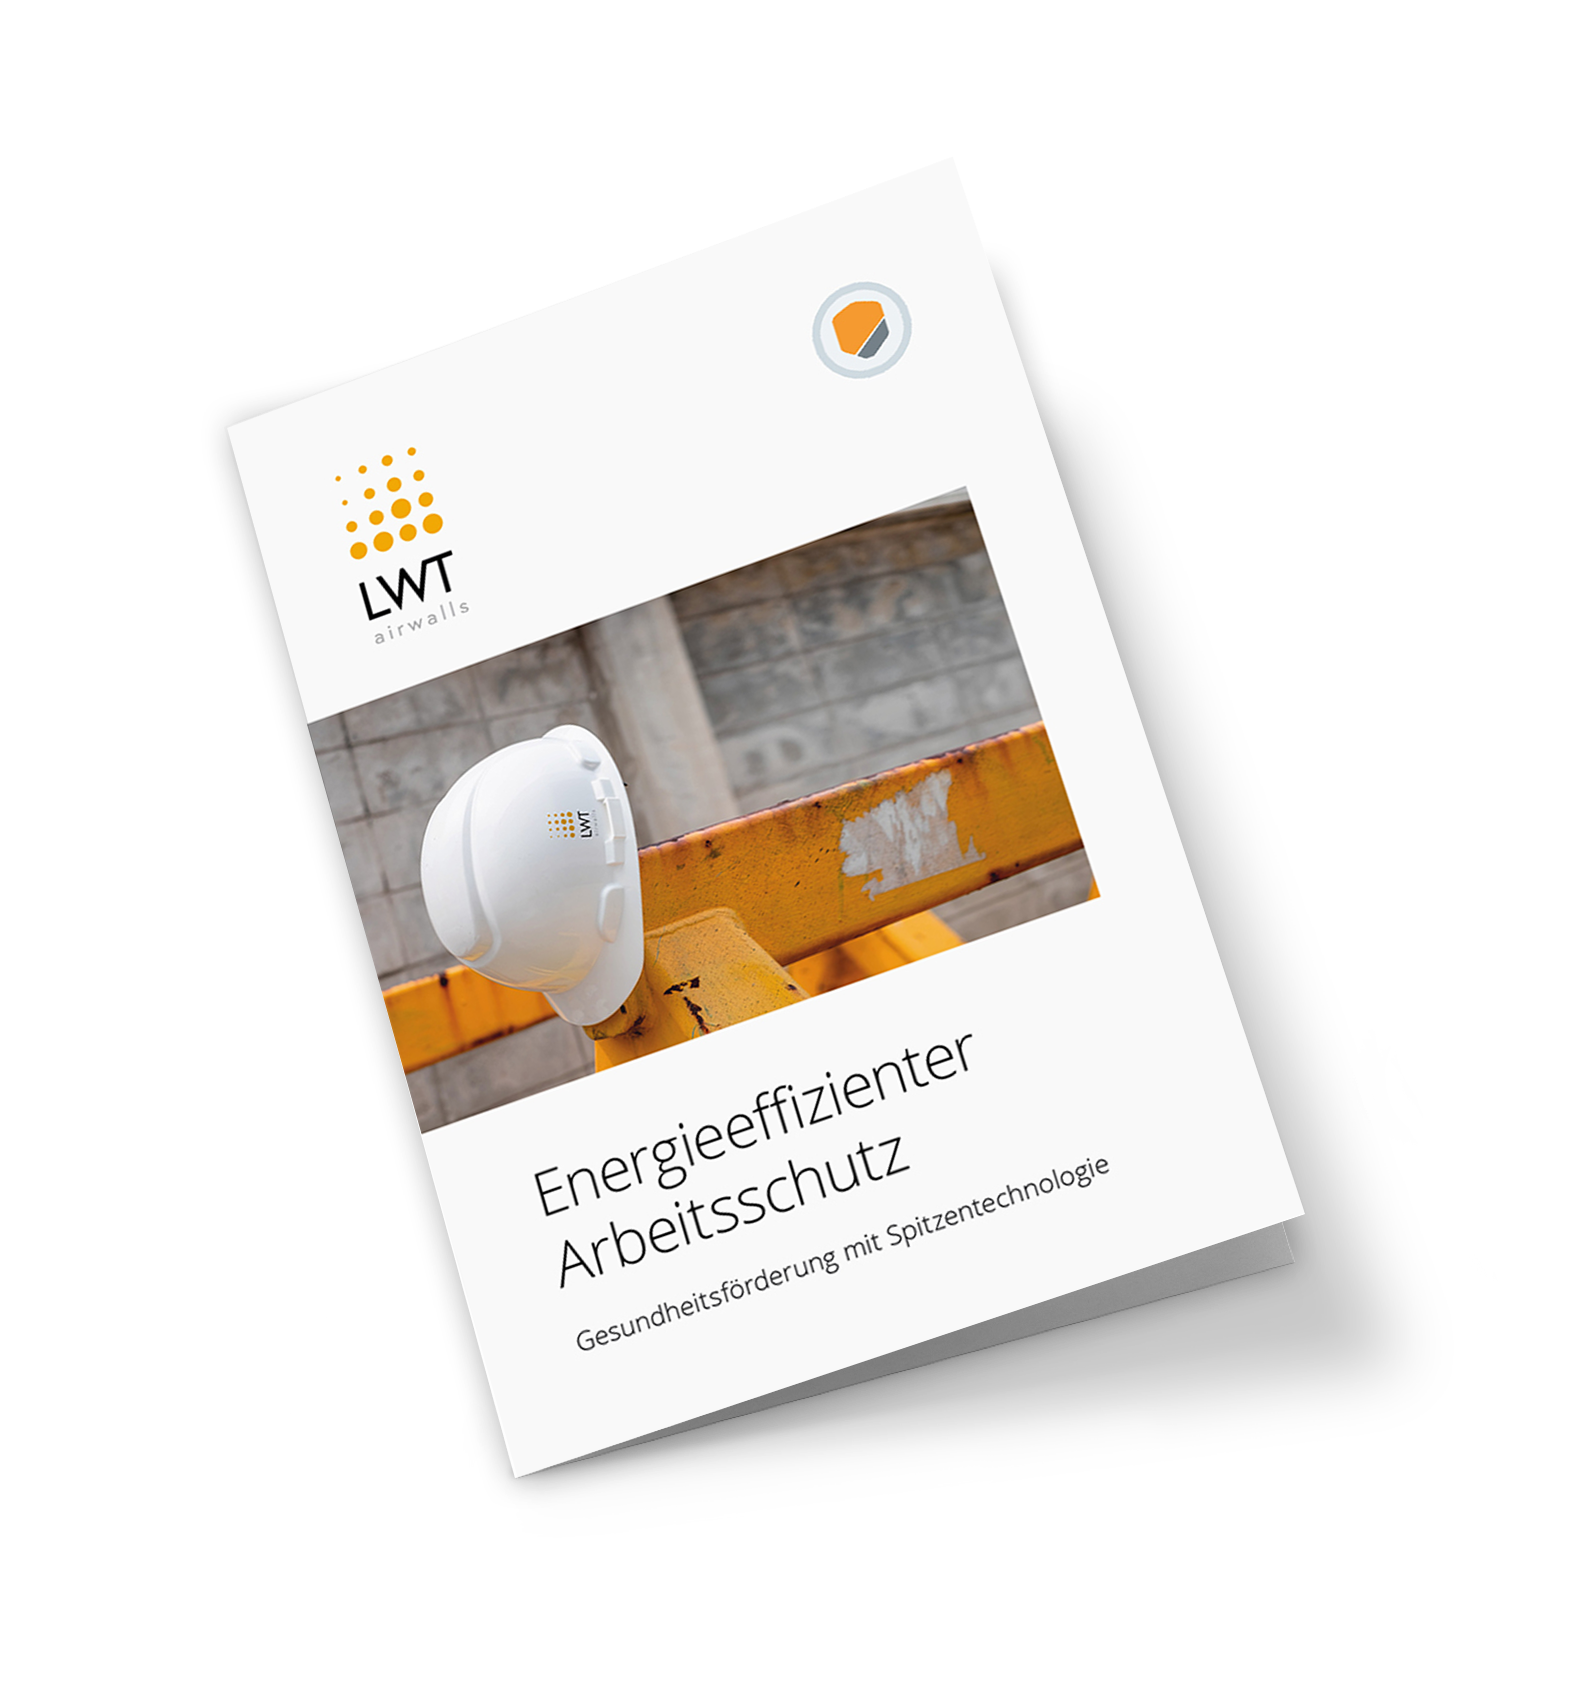 Casebook Energieeffizienter Arbeitsschutz mit Airwalls